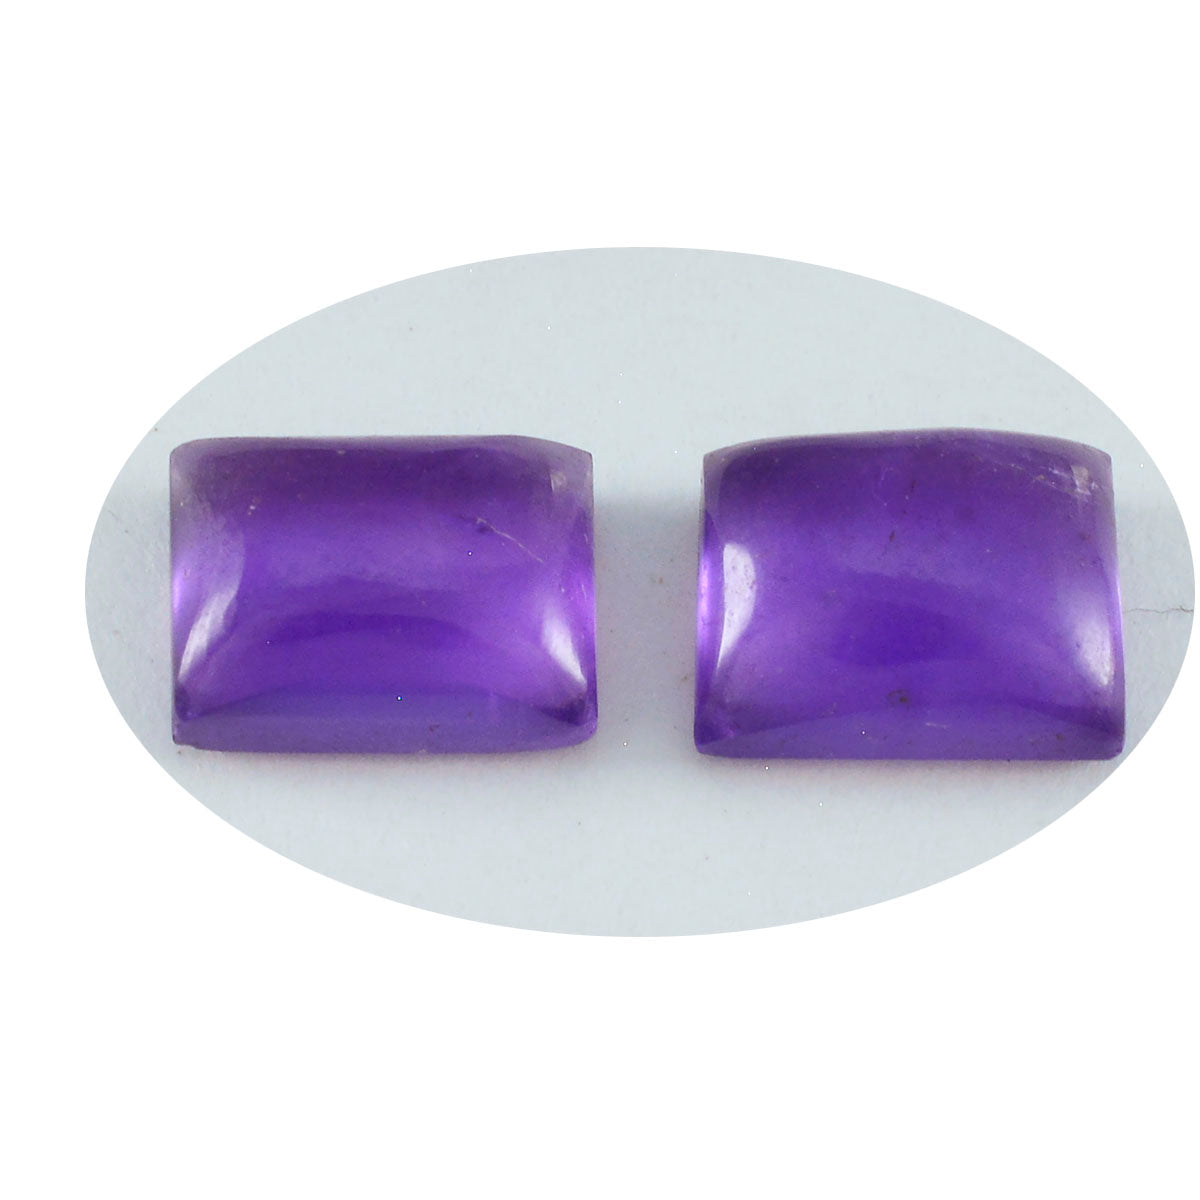 riyogems 1 шт. фиолетовый аметист кабошон 7x9 мм восьмиугольной формы, камень отличного качества